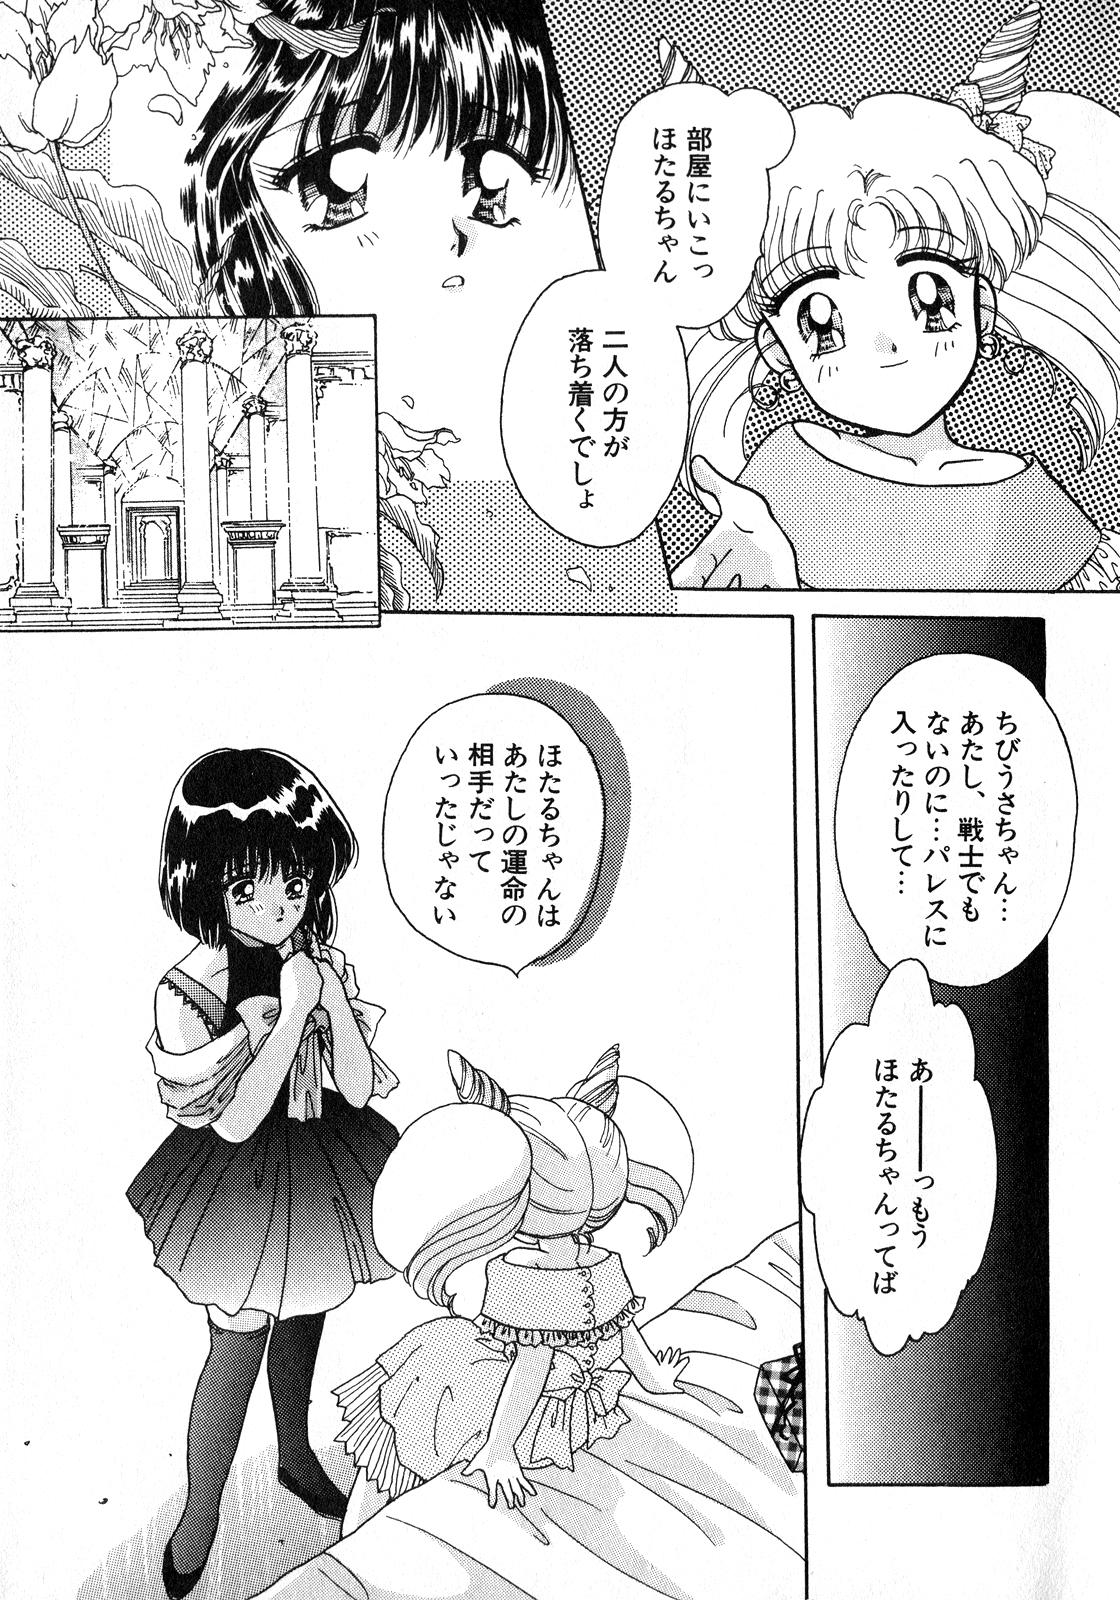 Big Black Dick Lunatic Party 8 - Sailor moon Coed - Page 6